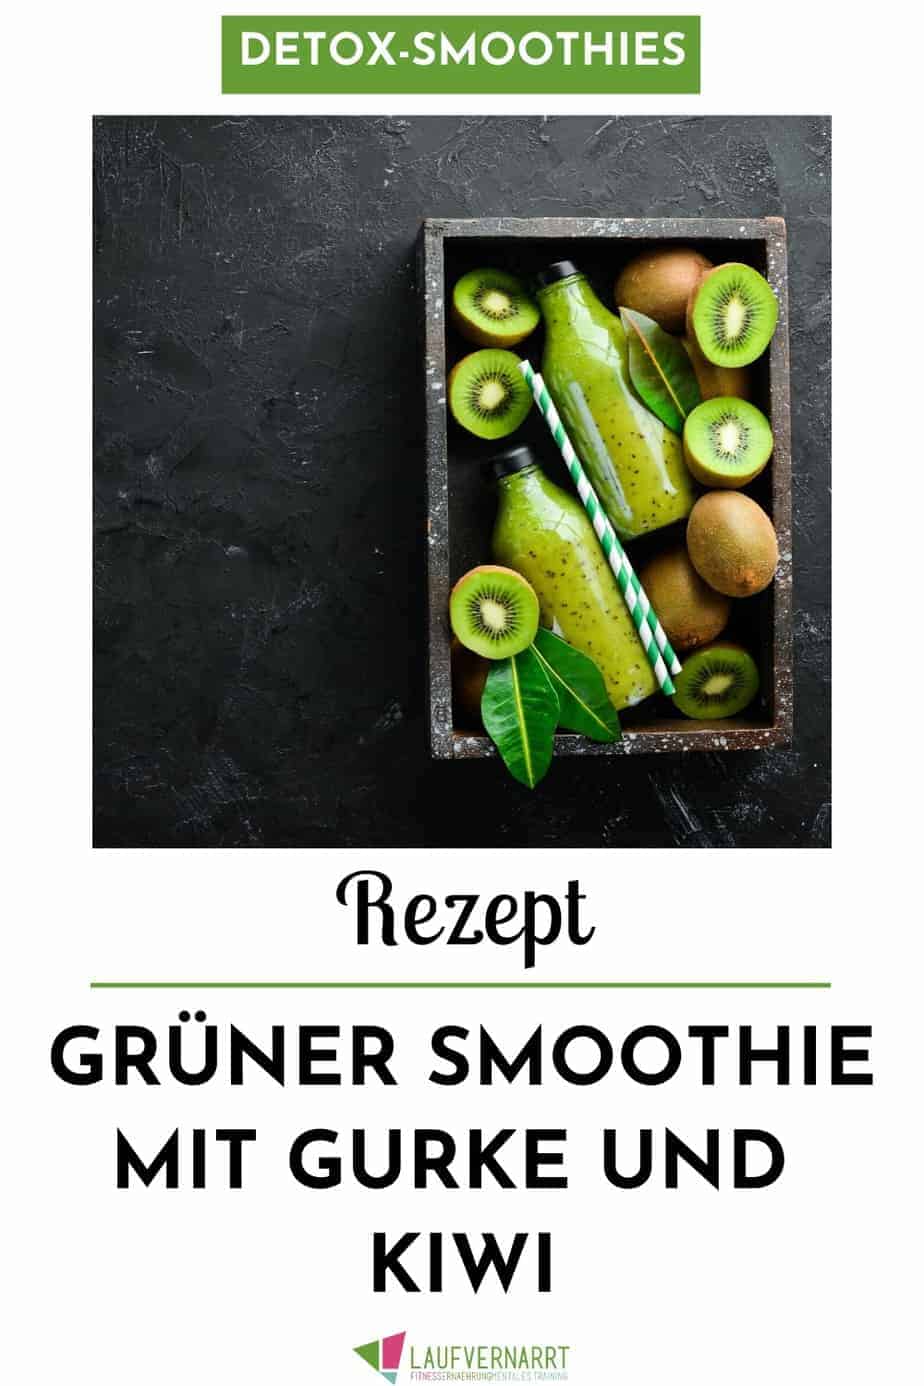 Dieser grüne Smoothie mit Gurke und Kiwi ist auch für Anfänger geeignet und sehr mild. #rezept #smoothie #grünersmoothie #gurke #gesundessen